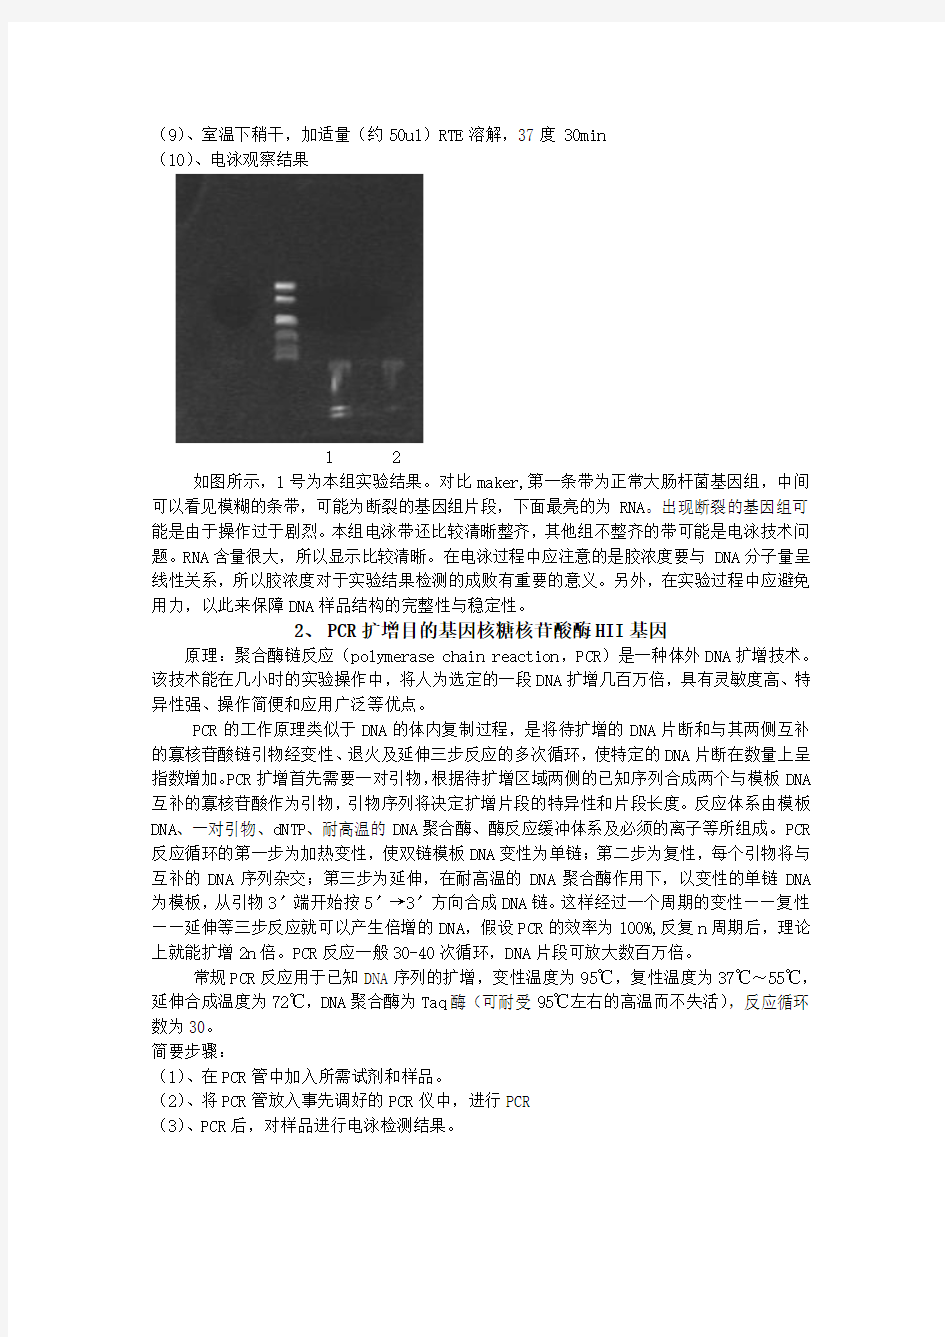 基因工程实验报告(程庆佳,生物技术,20091070004)